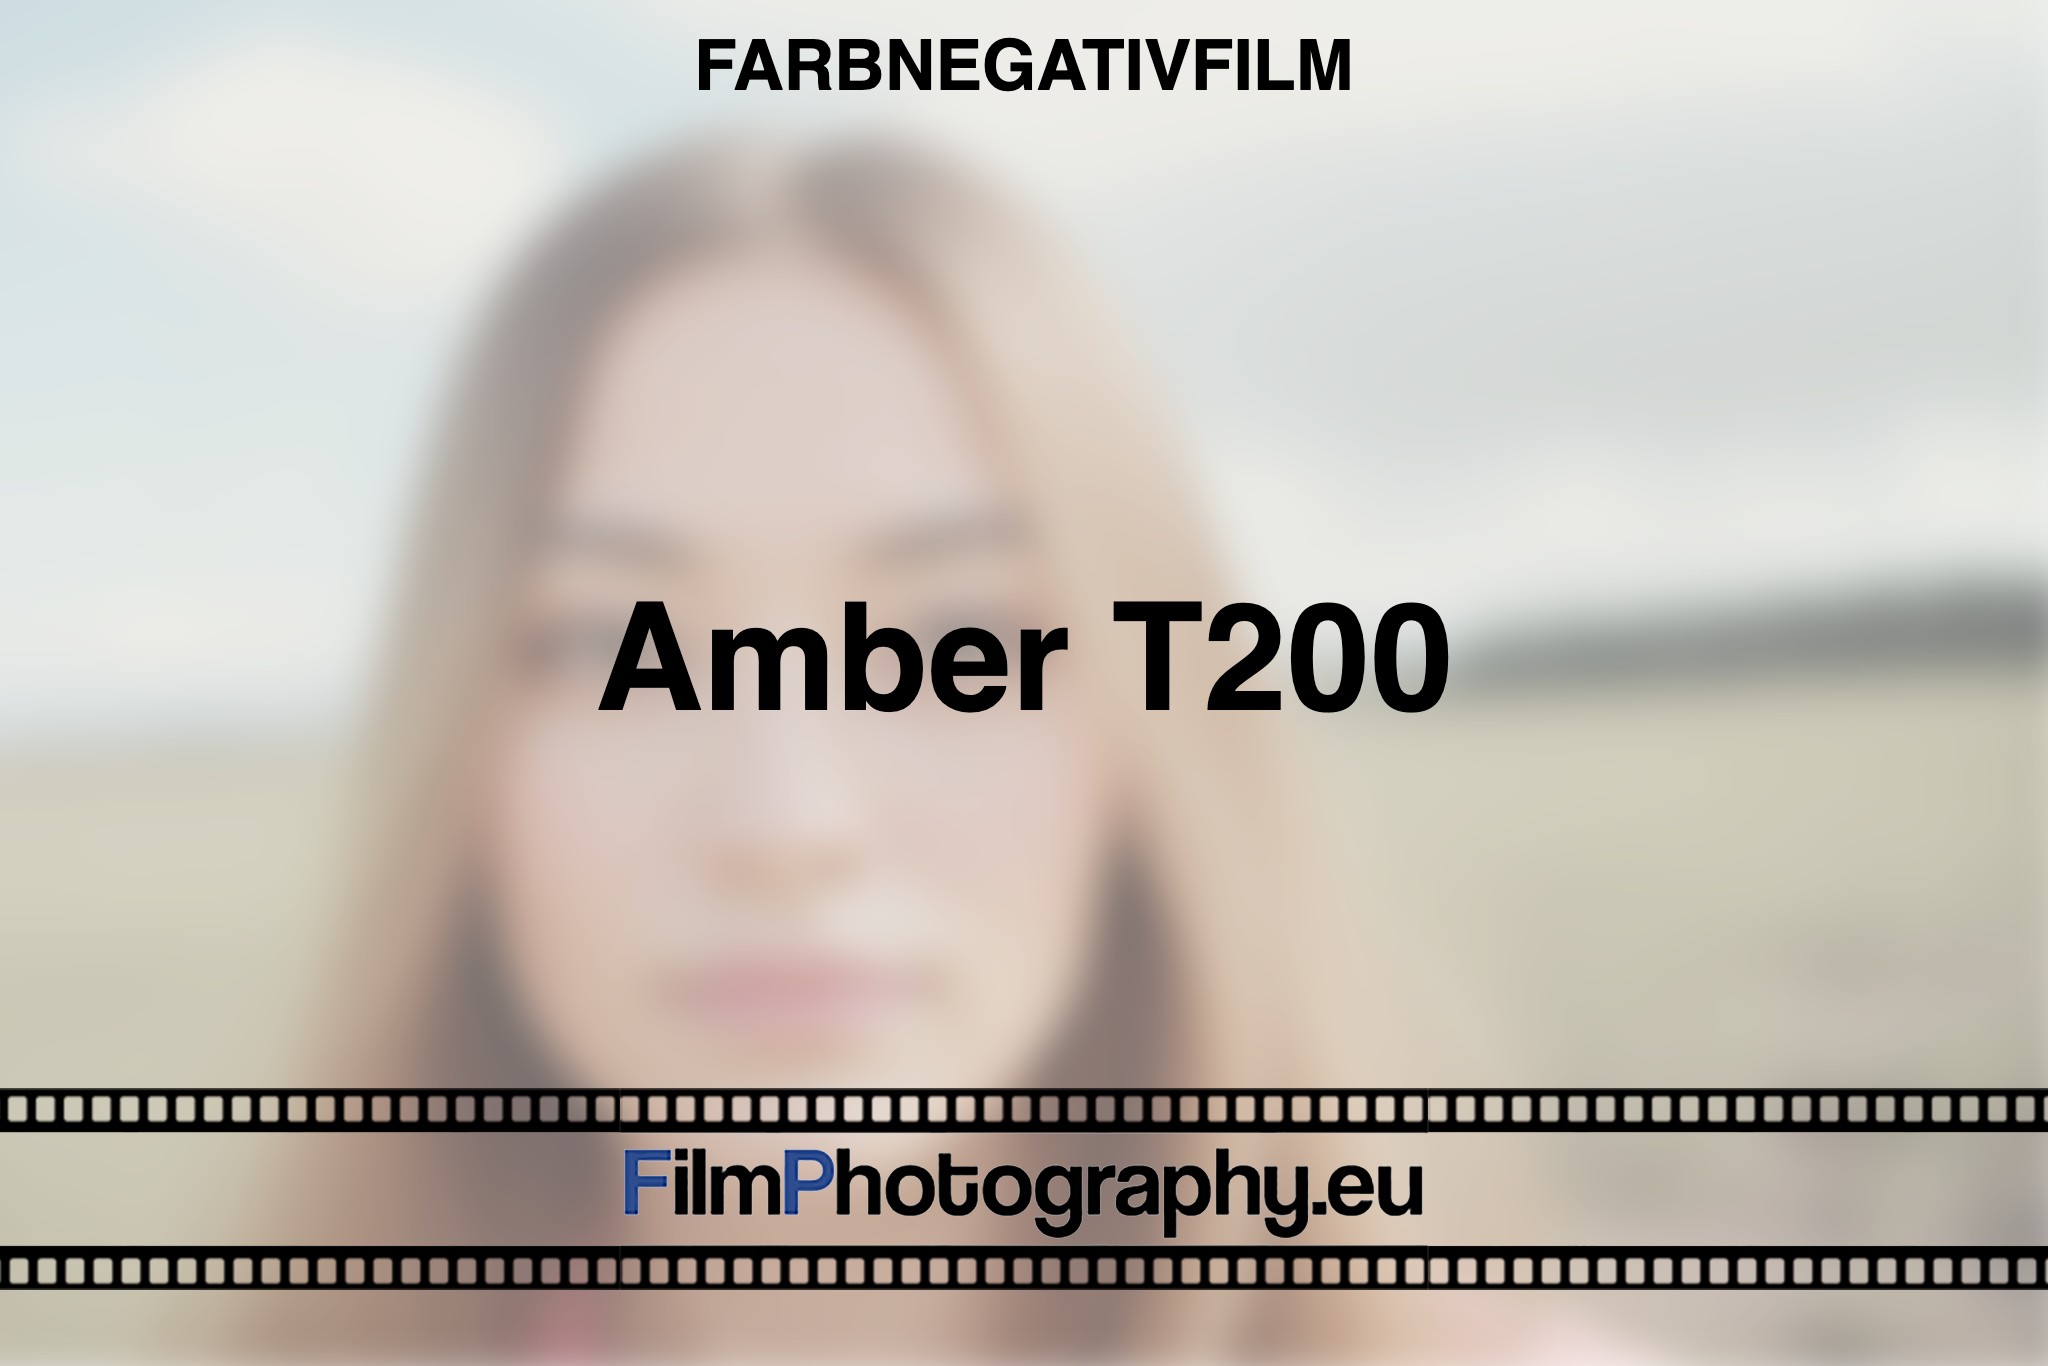 Amber-T200-Farbnegativfilm-bnv